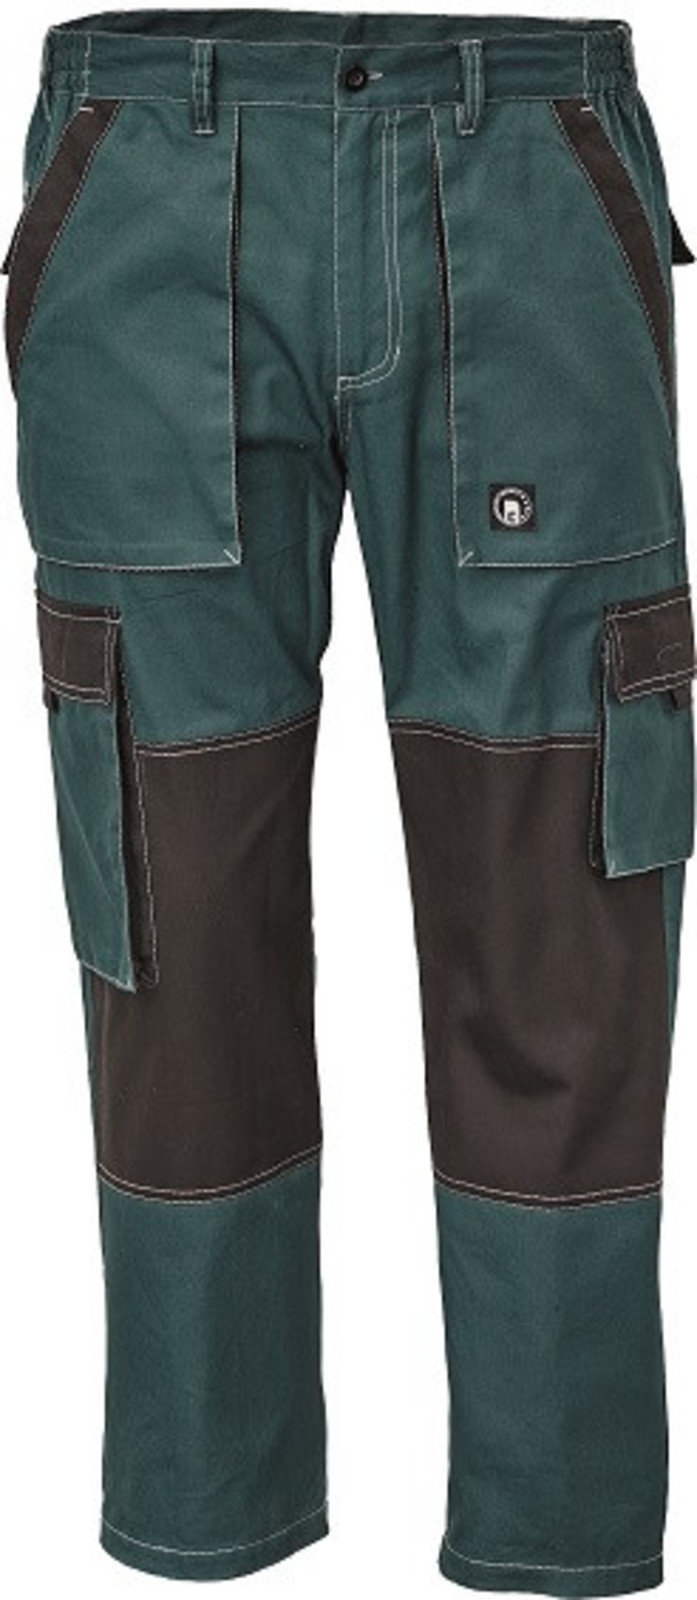 Tenšie bavlnené montérky Max Summer - veľkosť: 60, farba: zelená/čierna